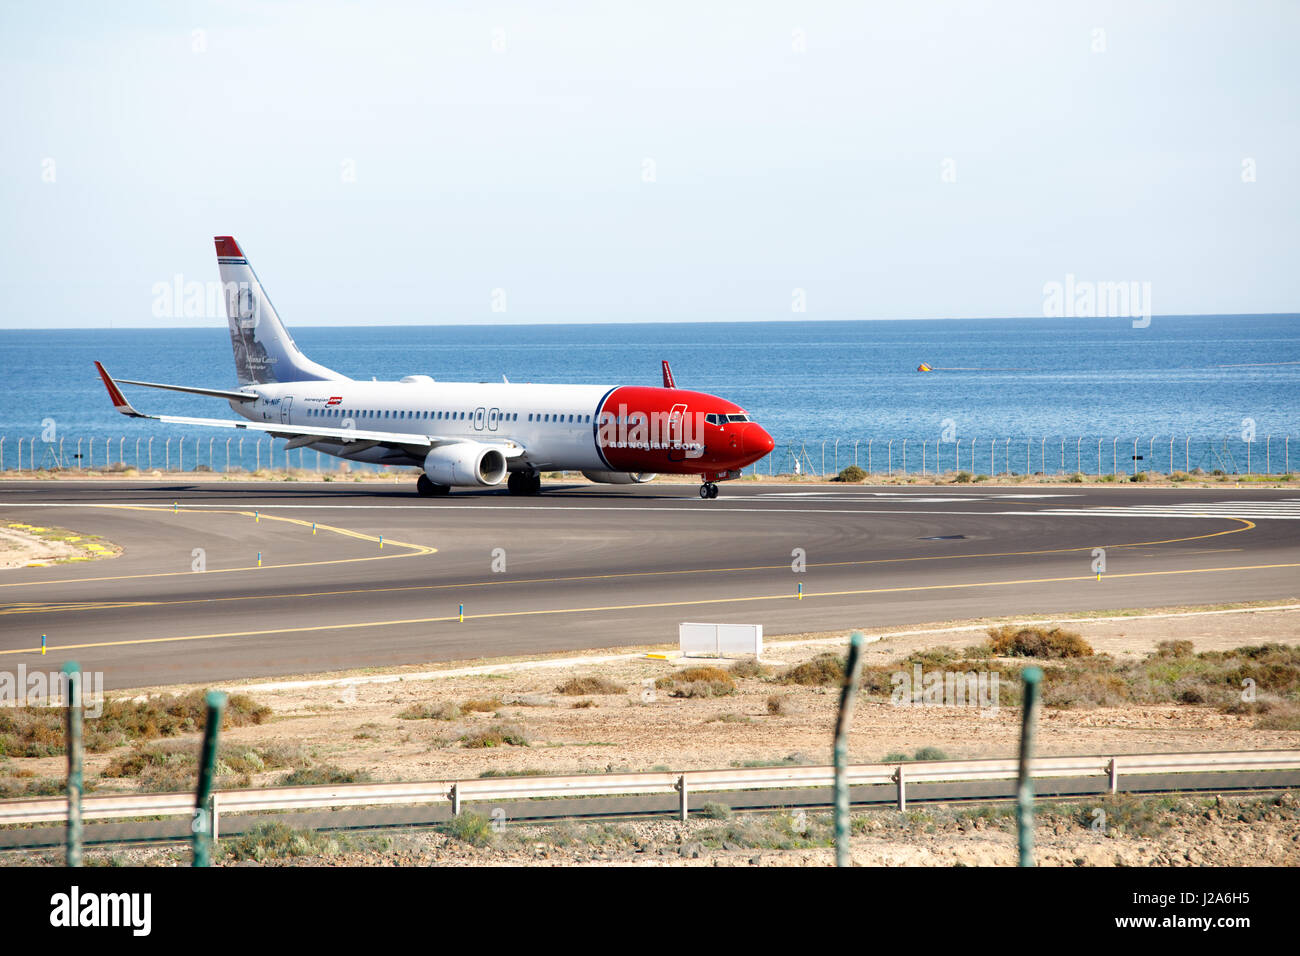 ARECIFE, Spagna - DESEMBER, 2 2016: un Boeing 737-800 della Norwegian Air Shuttle a Lanzarote Airport Foto Stock